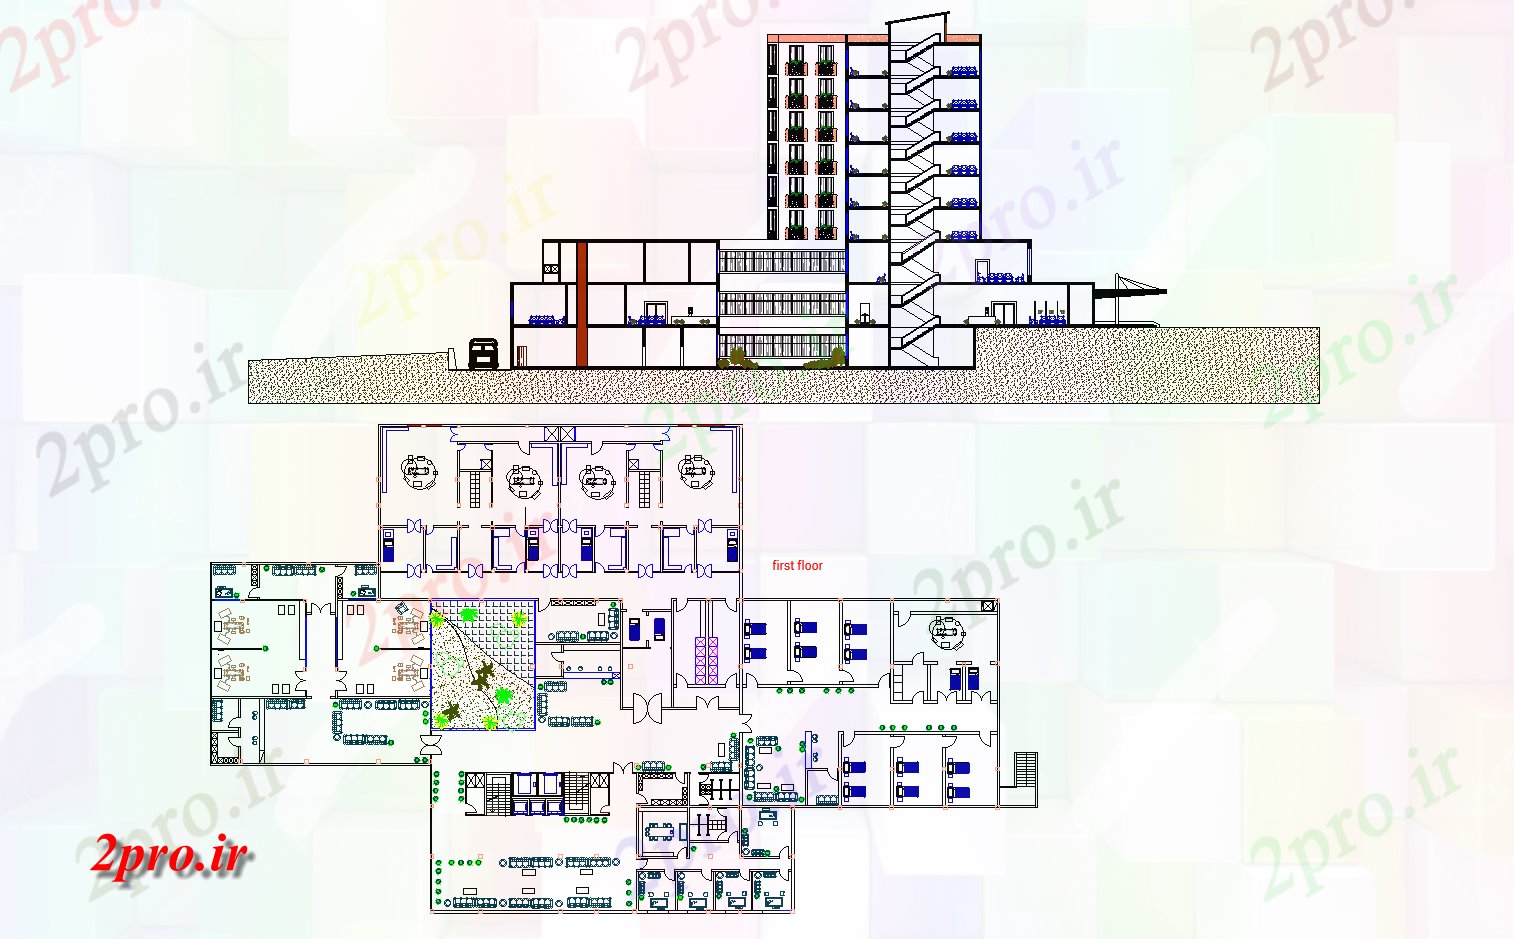 دانلود نقشه بیمارستان عمومی طبقه اول طرحی جزئیات 29 در 53 متر (کد75154)